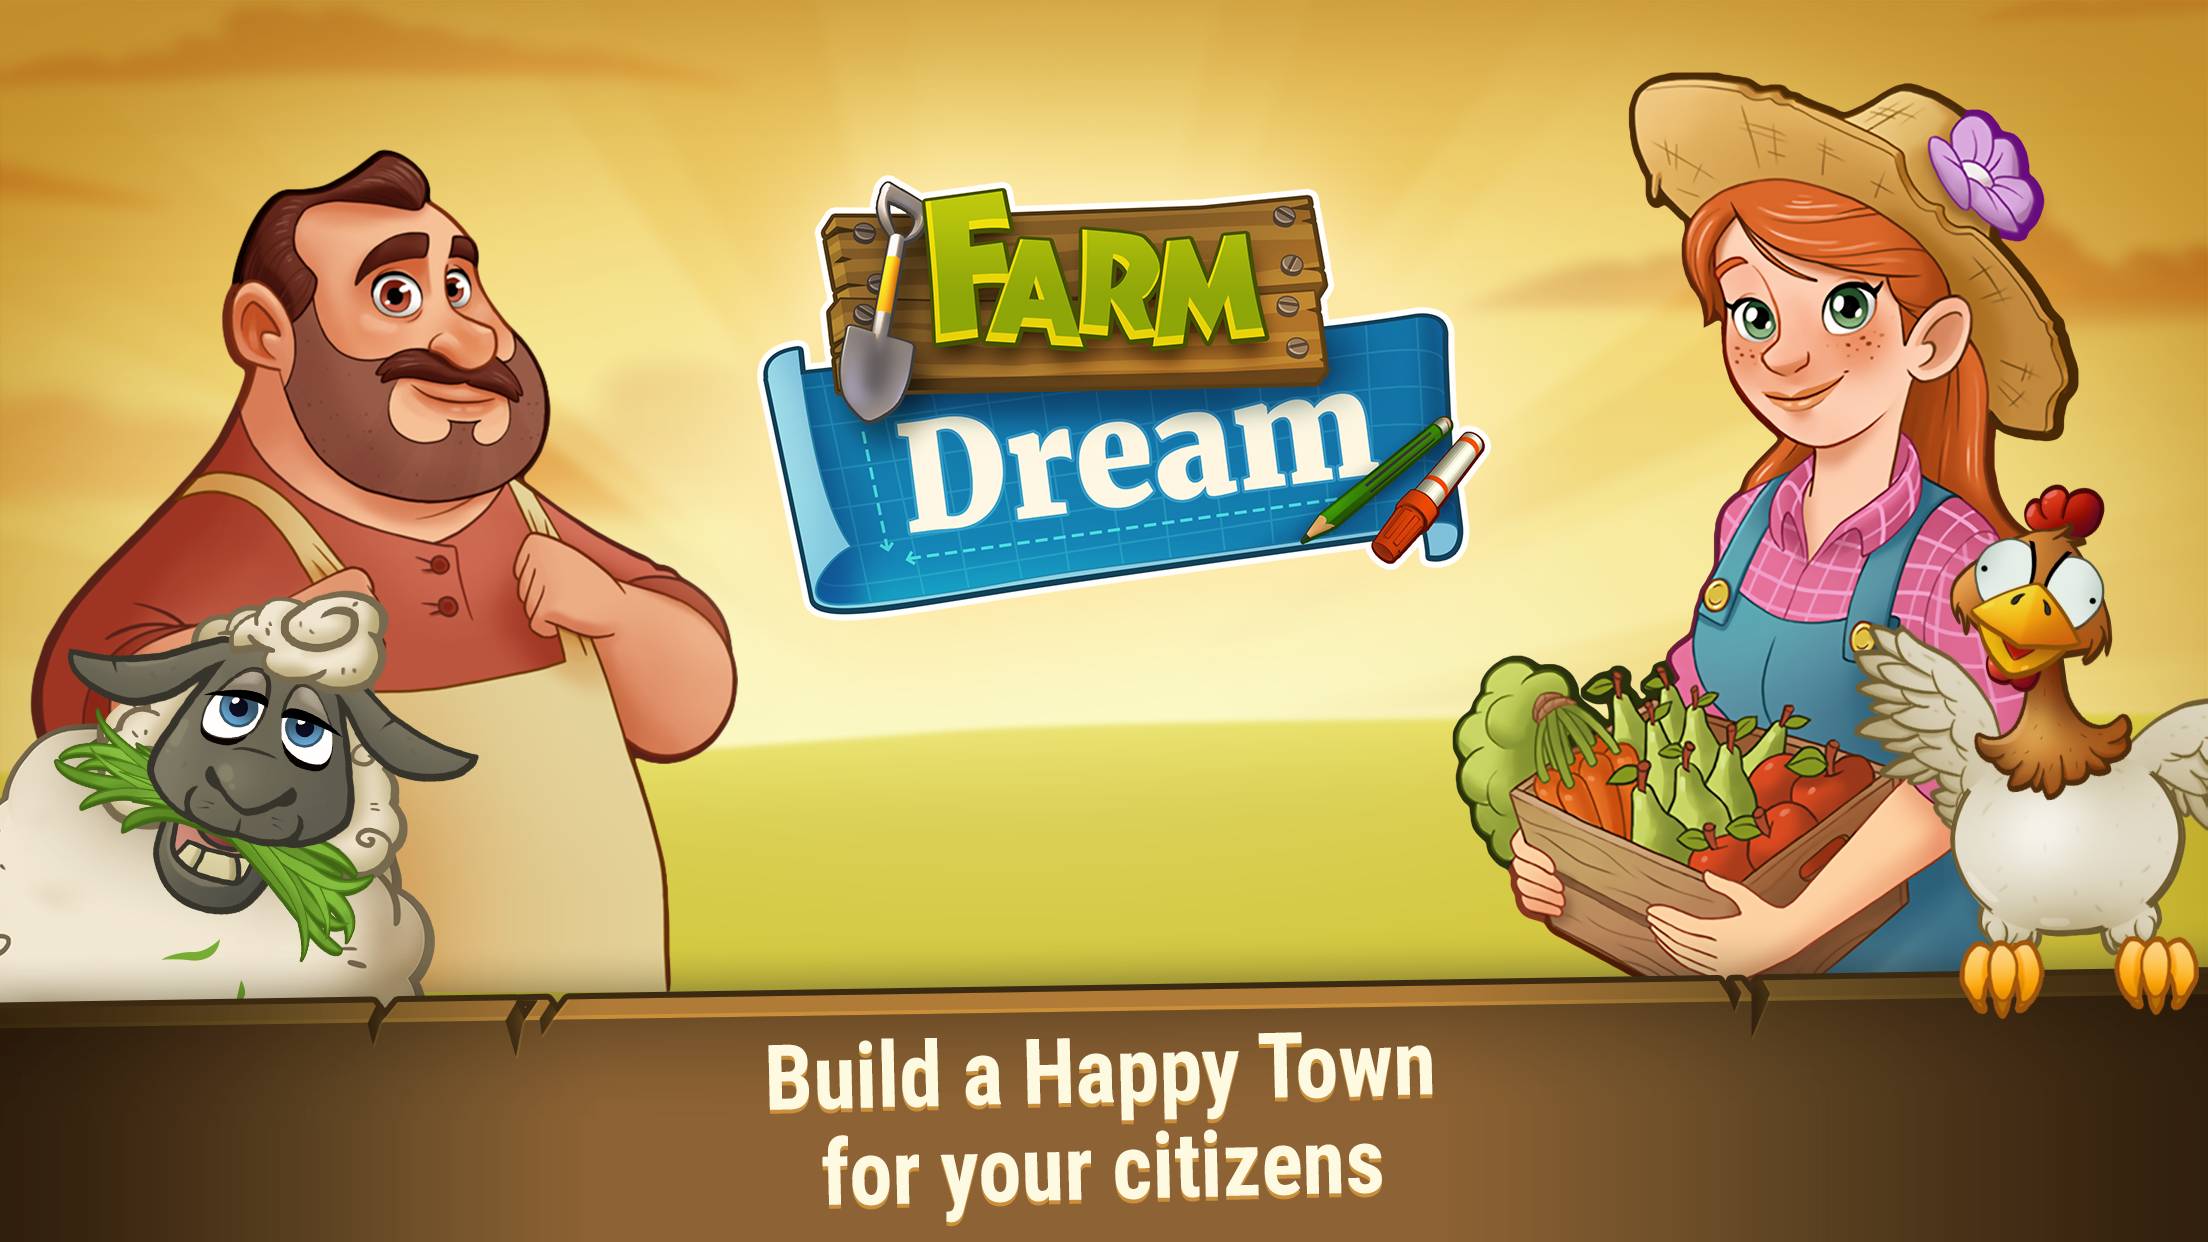 Farm Dream is live